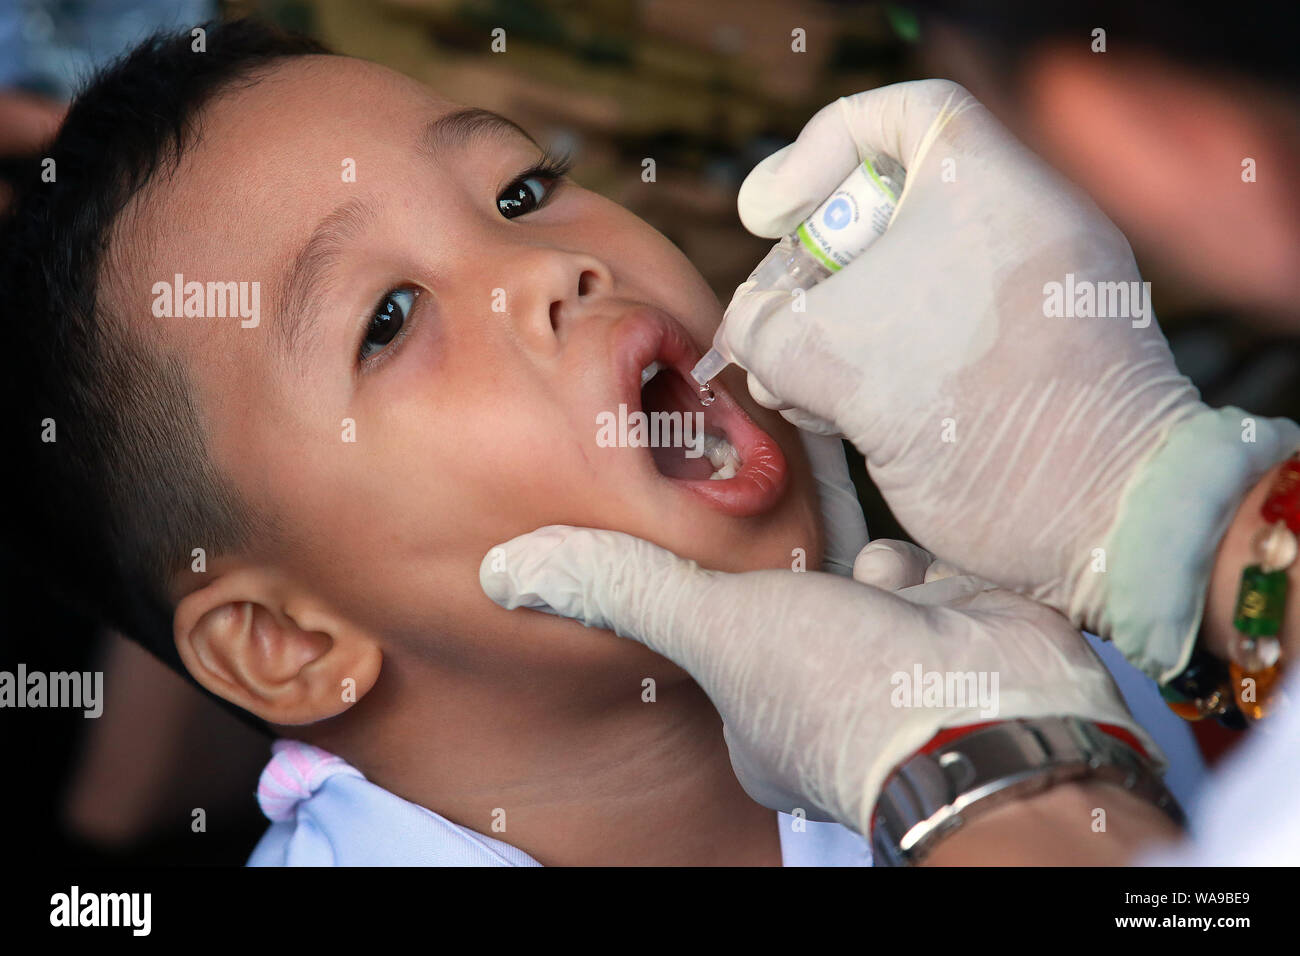 (190819) -- MANILLE, 19 août 2019 (Xinhua) -- Un garçon reçoit un vaccin poliomyélitique oral au cours d'une campagne anti-polio par le ministère de la Santé des Philippines à Manille, Philippines, le 19 août 2019. (Xinhua/Rouelle Umali) Banque D'Images